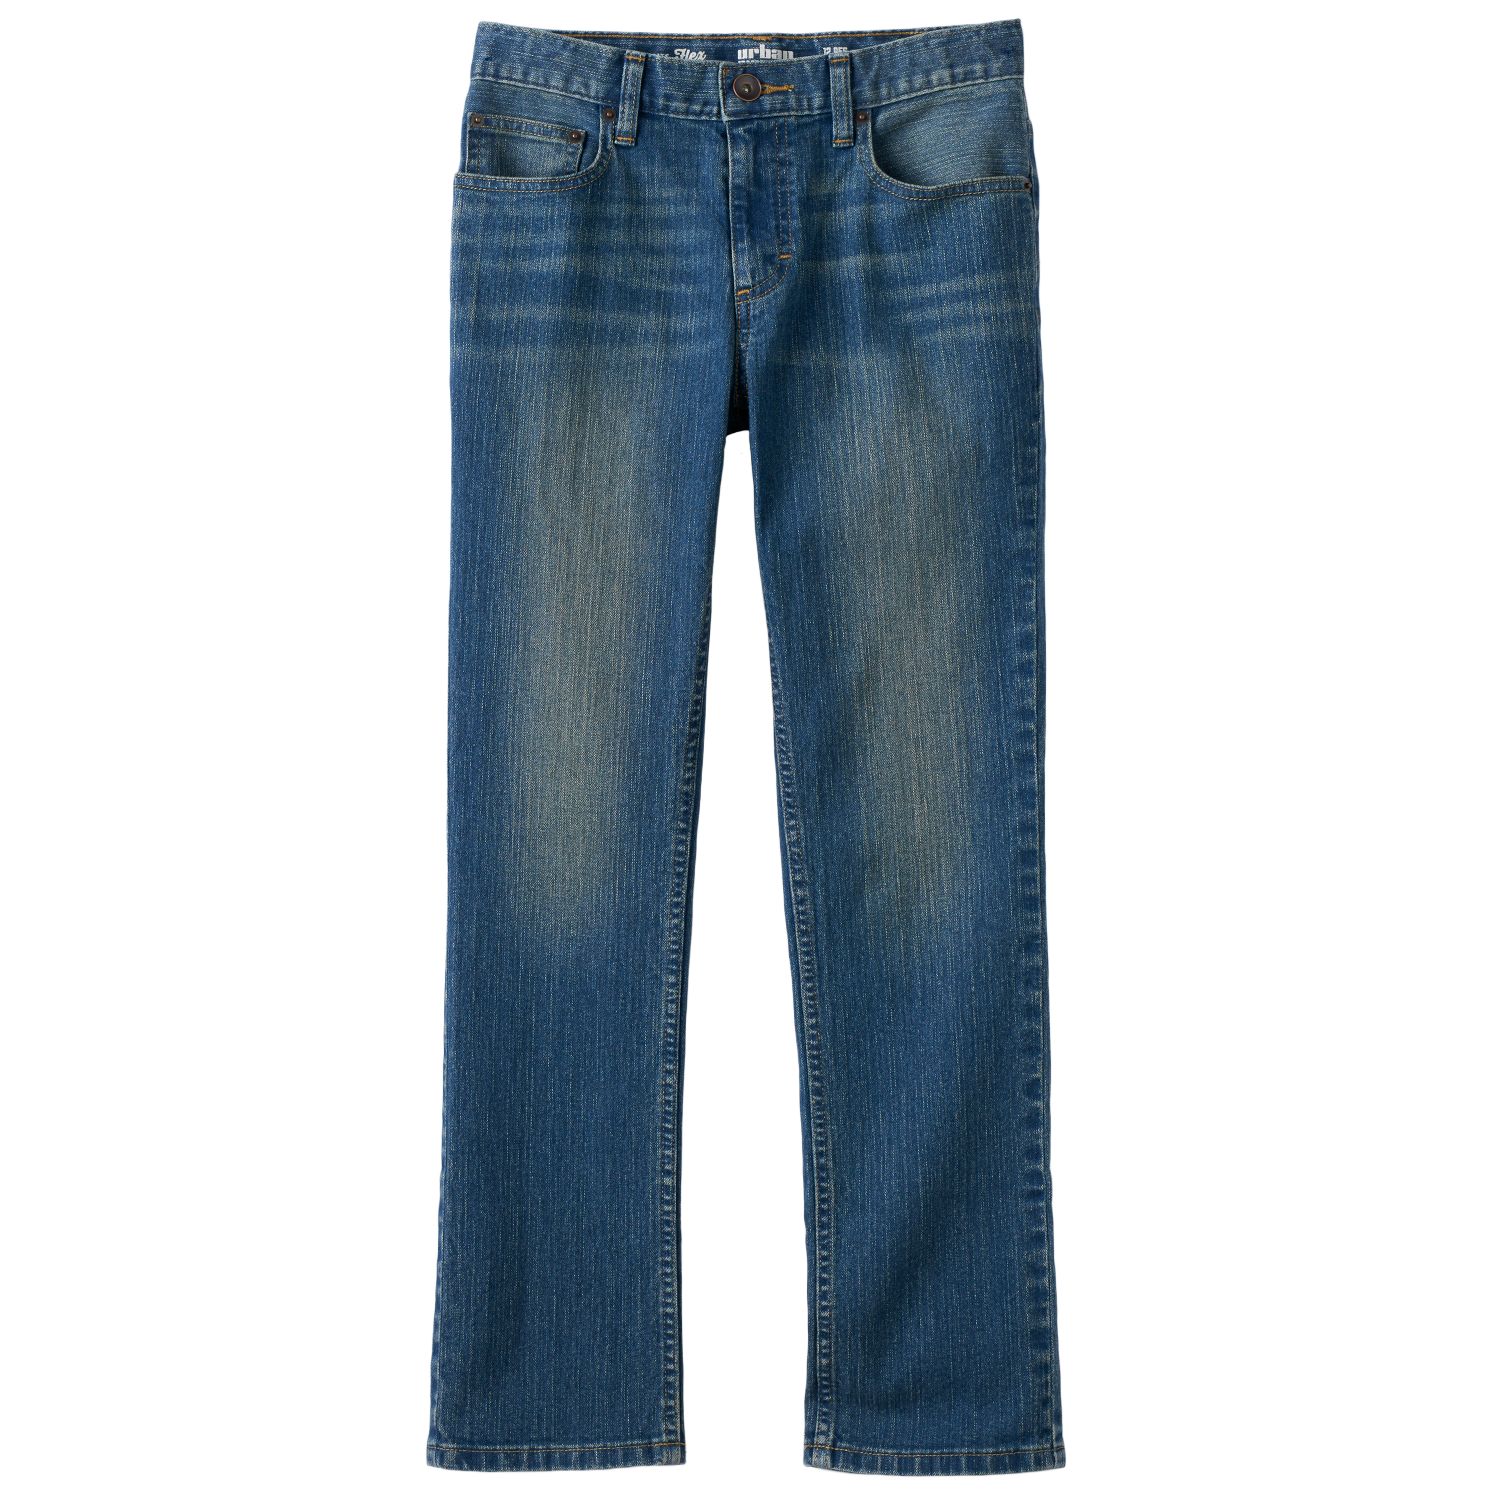 eddie bauer blue jeans